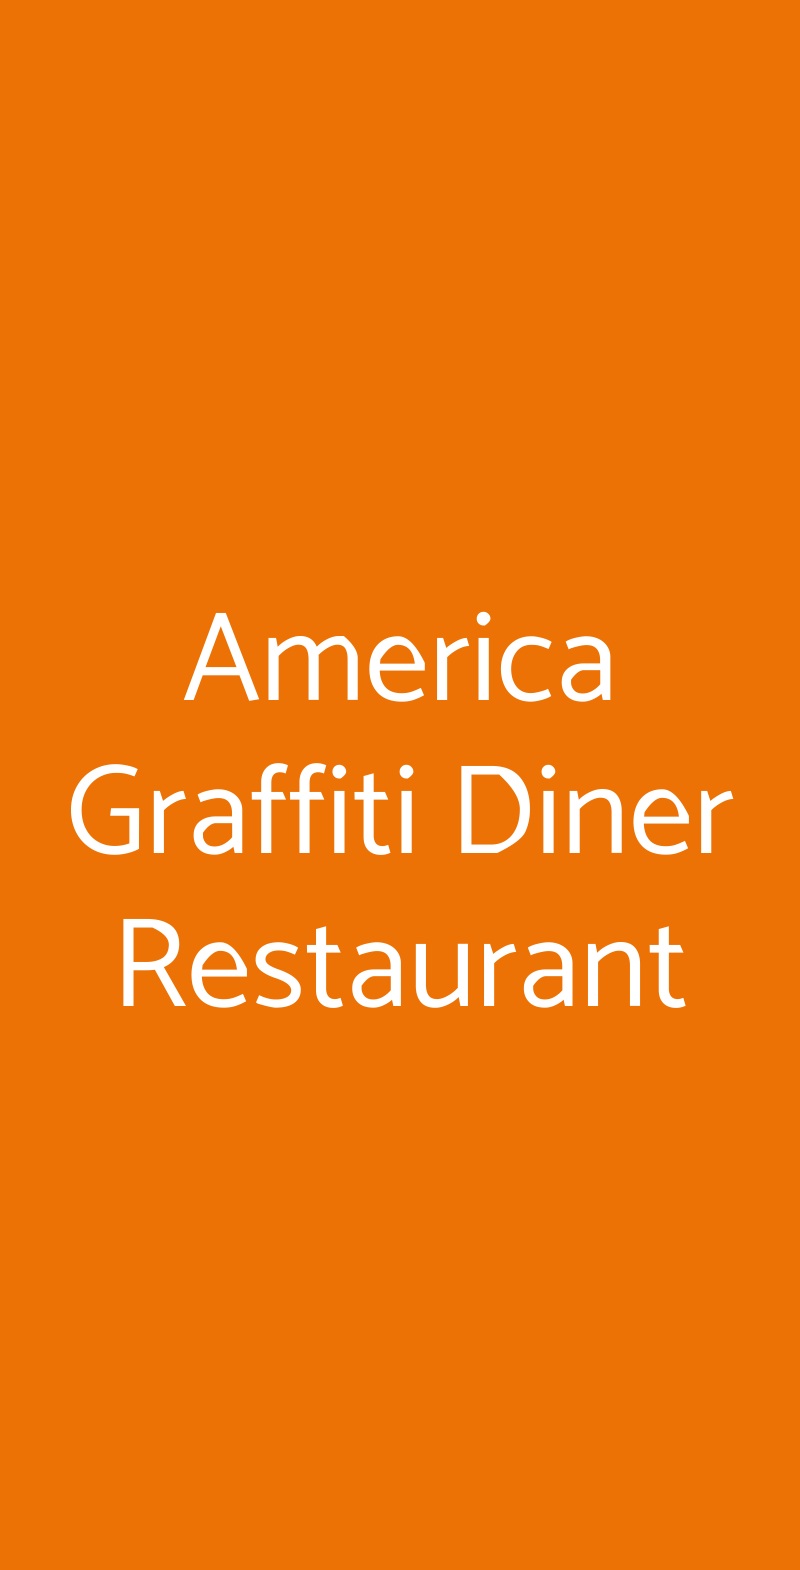 America Graffiti Diner Restaurant  San Giovanni Lupatoto menù 1 pagina